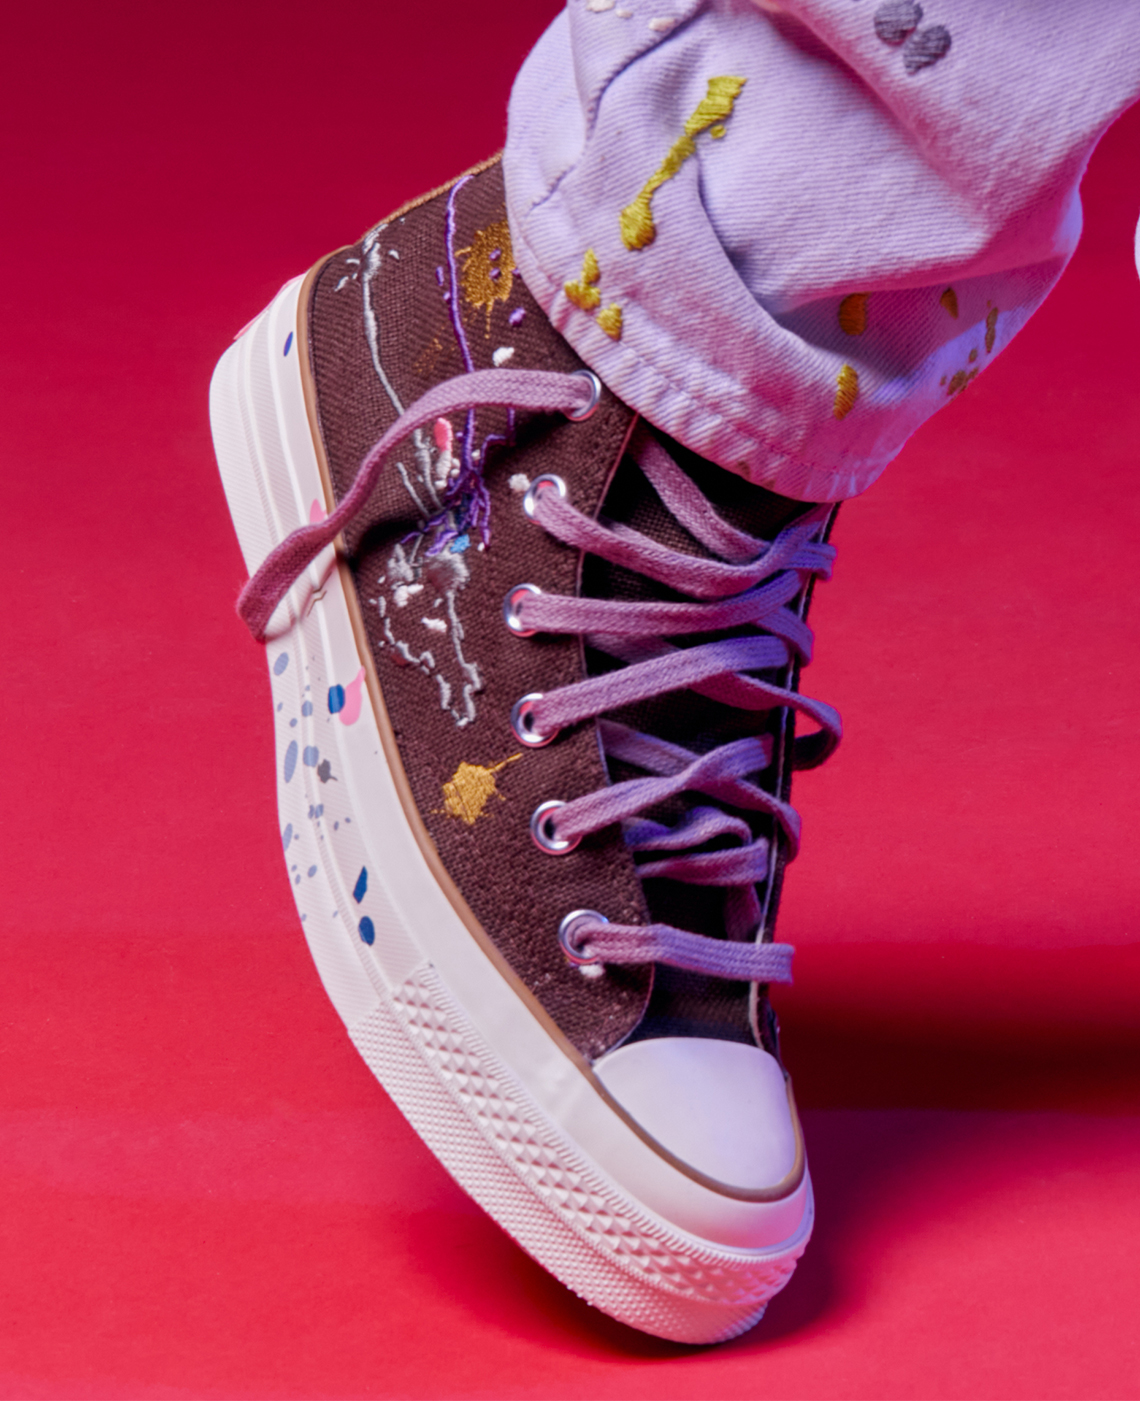 Bandulu Converse Pro Leather Chuck 70 2021 Release Date | SneakerNews.com